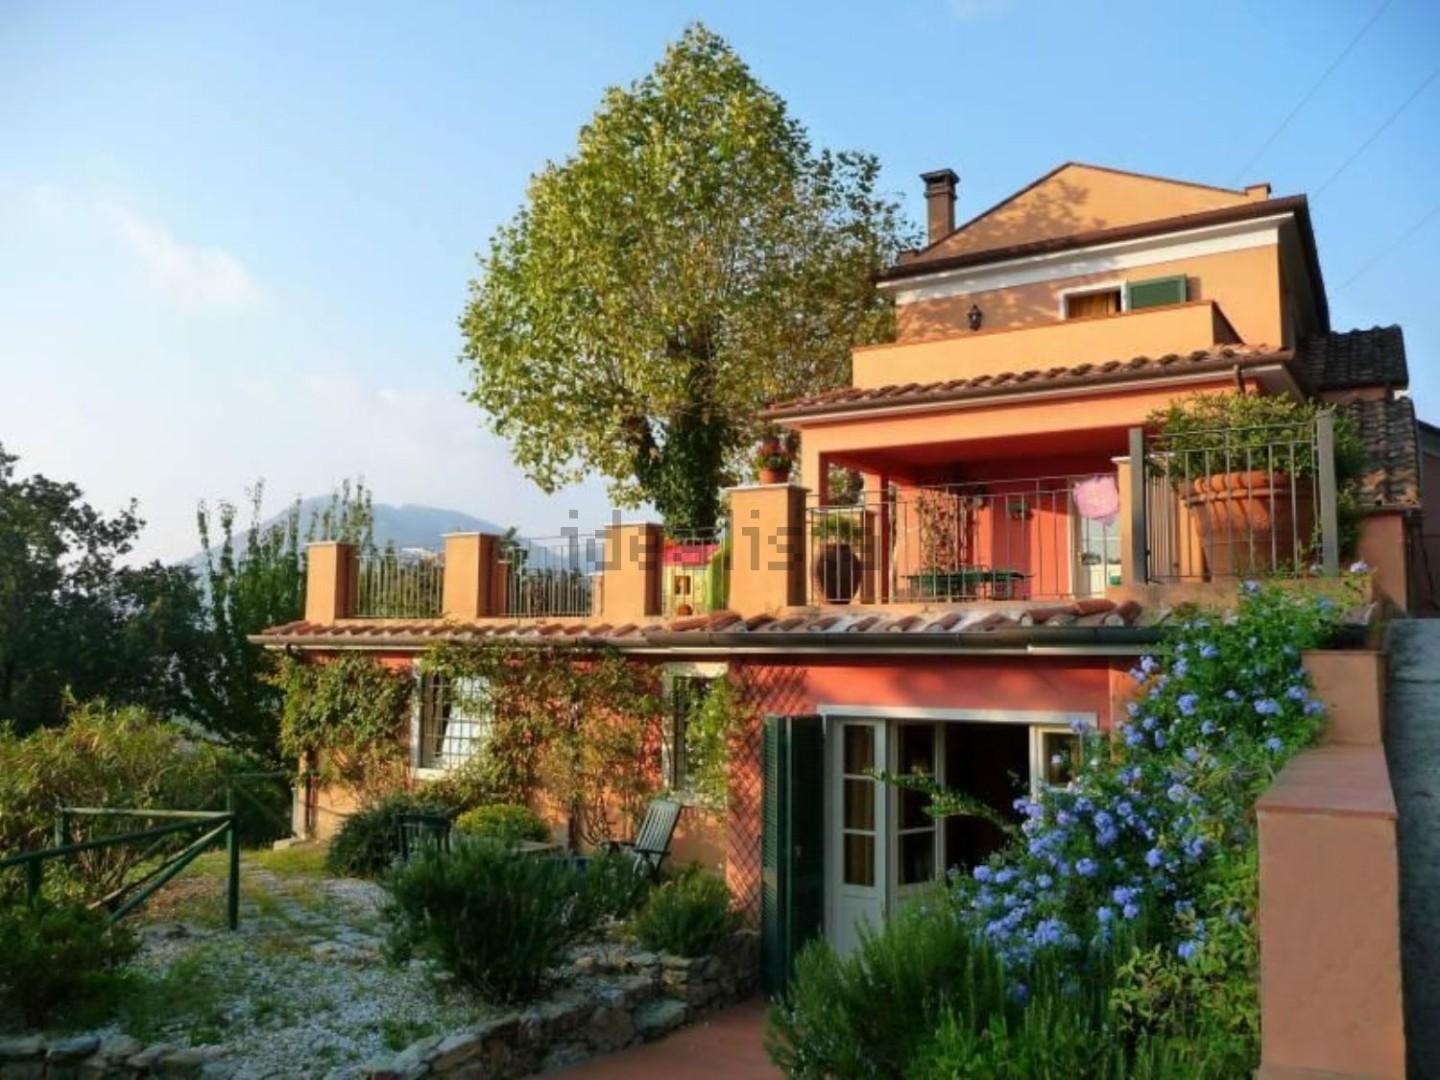 Villa Bifamiliare con giardino, Carrara nazzano